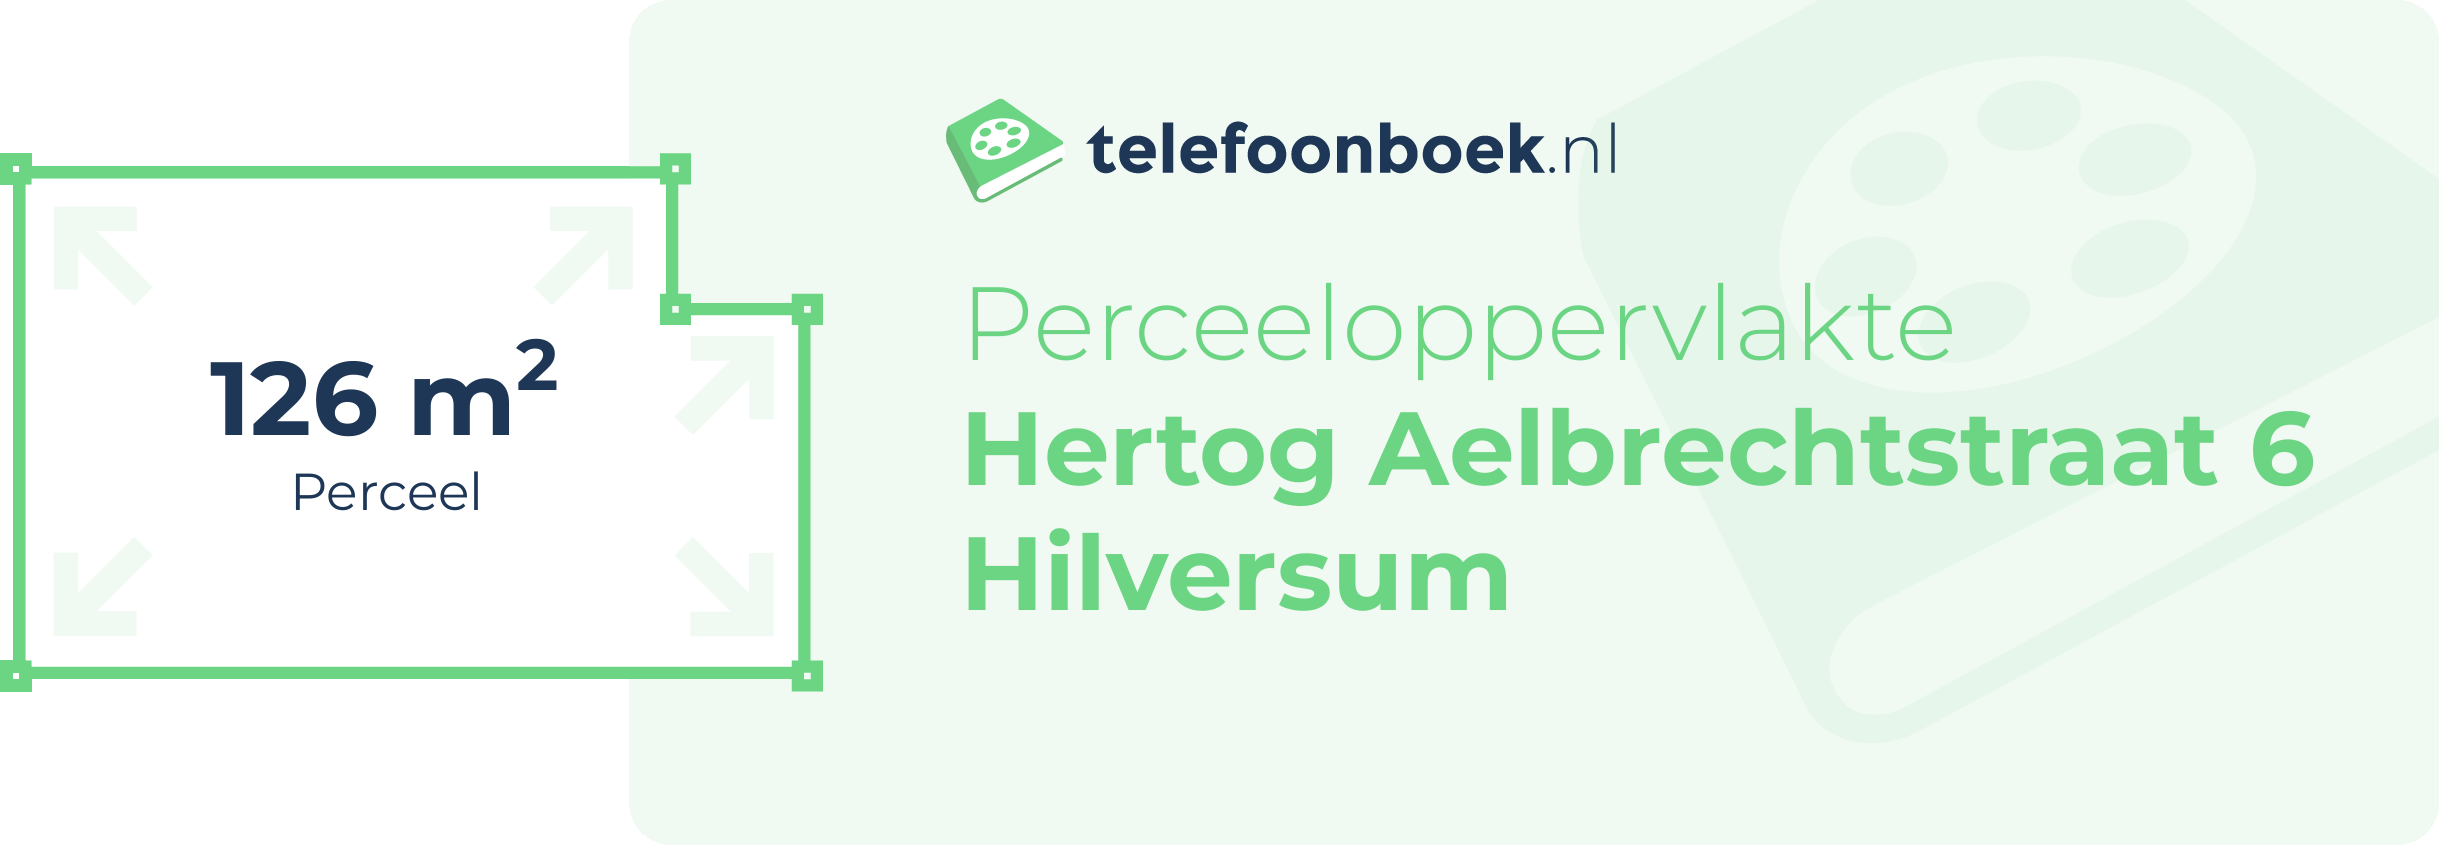 Perceeloppervlakte Hertog Aelbrechtstraat 6 Hilversum